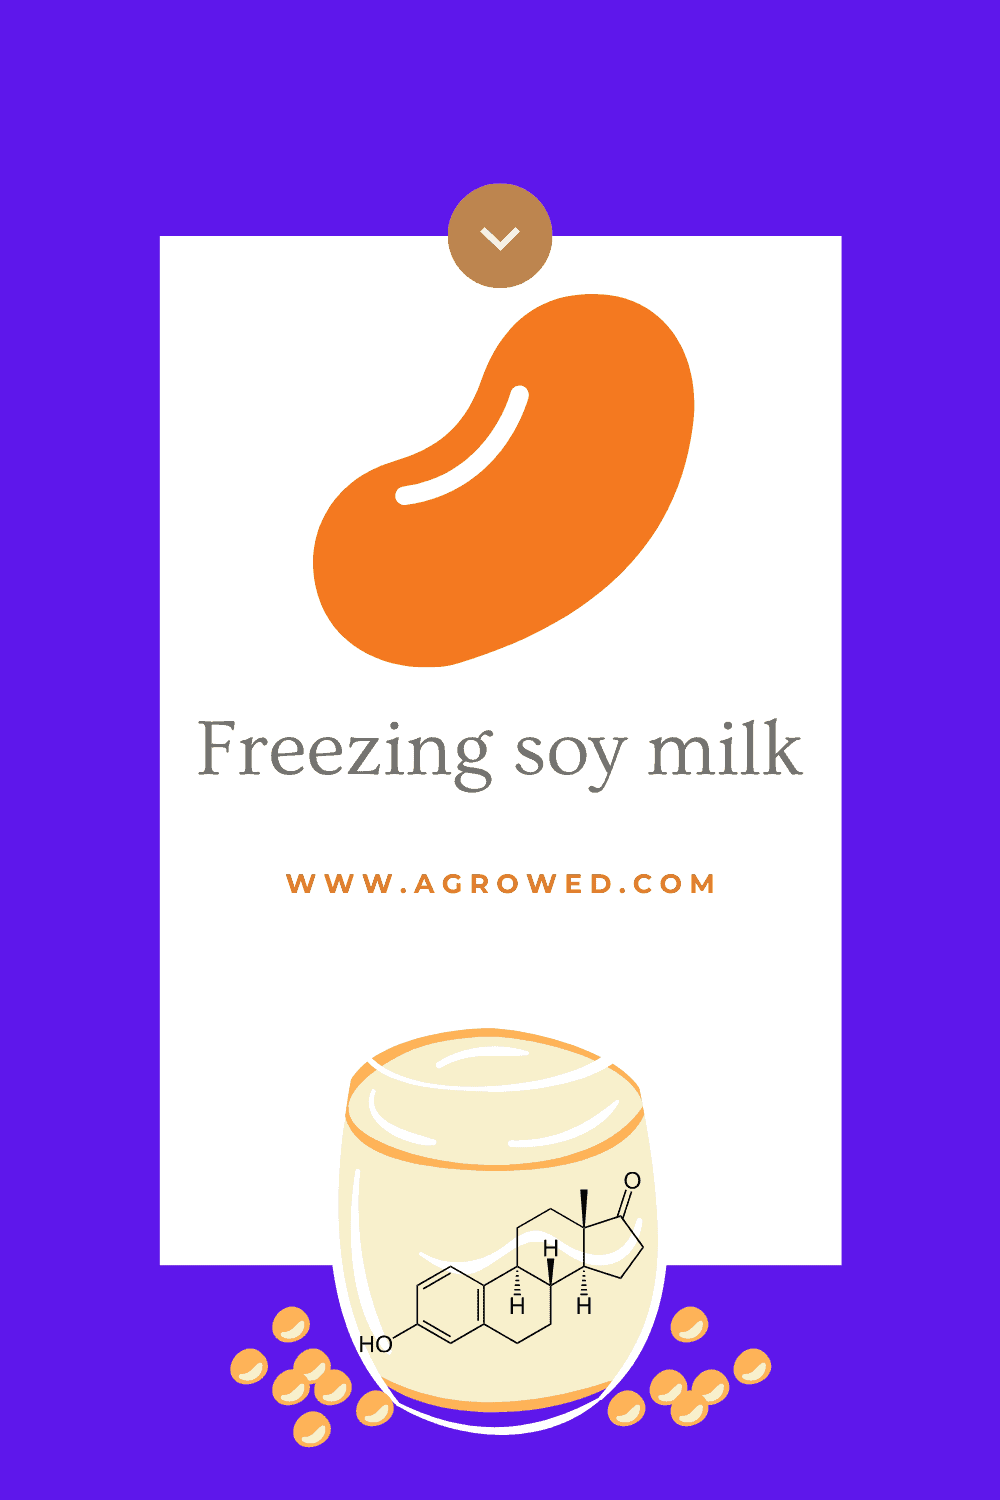 Freezing soy milk